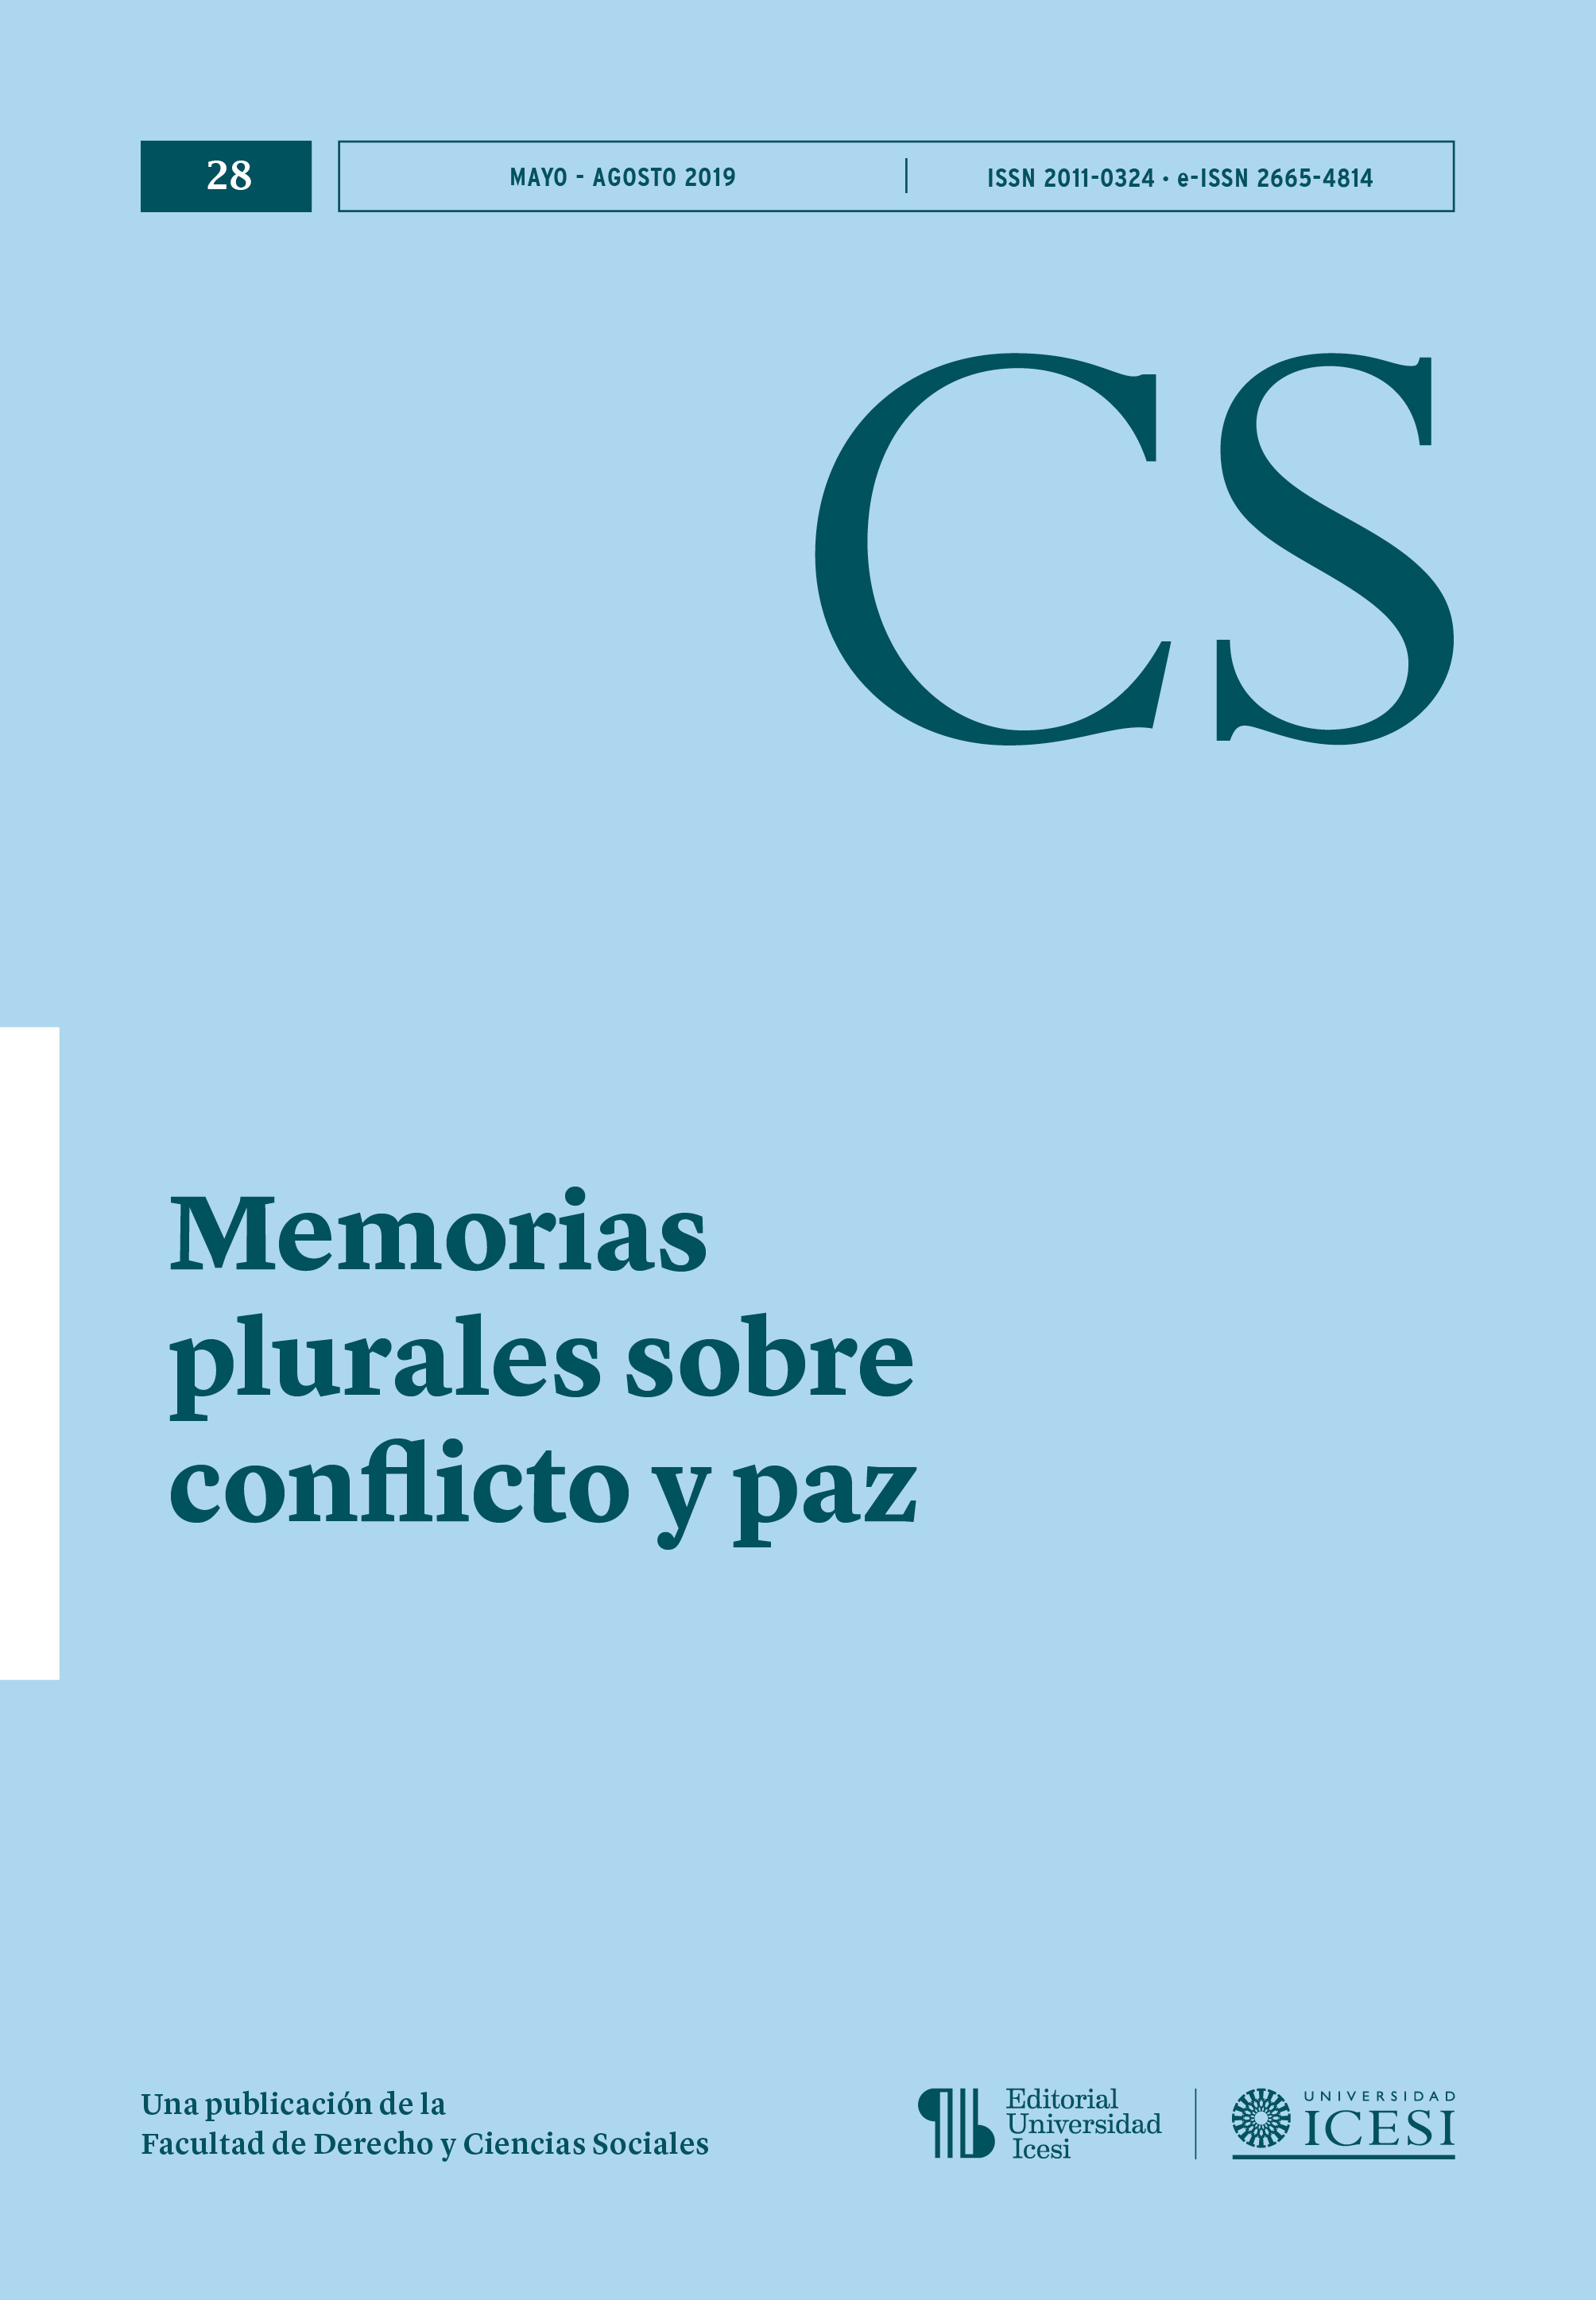 					View No. 28 (2019): No. 28, Mayo-Agosto (2019): Memorias plurales sobre conflicto y paz
				